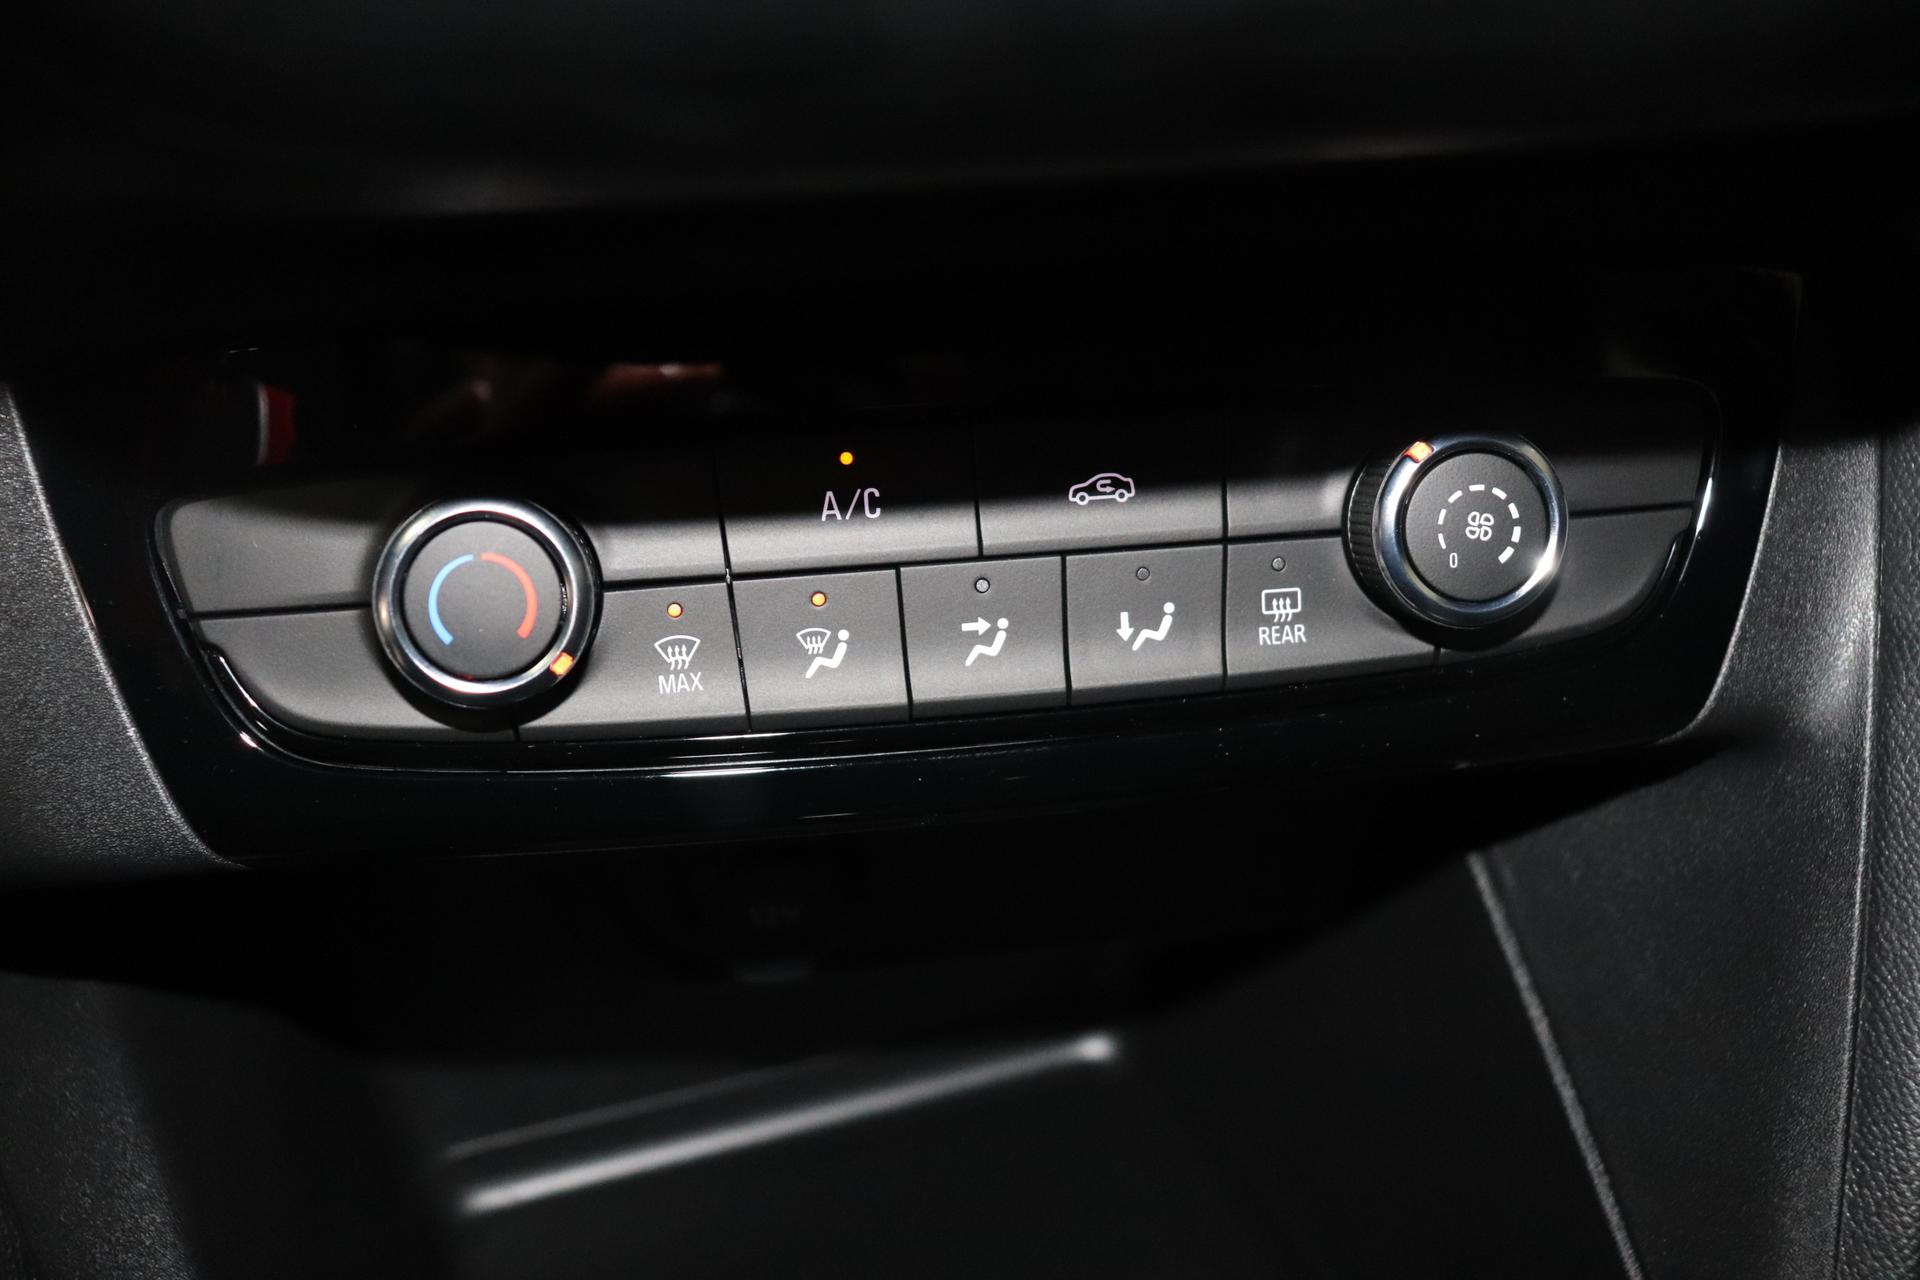 Opel Corsa F Edition 1.2 55kW MT5 S/S, Klimaanlage, Radio DAB, 5  Infotainmentsystem, Freisprecheinrichtung, PDC hinten,  Geschwindigkeitsbegrenzer, Verkehrszeichenerkennung, Lichtsensor, 16  Stahlfelgen, uvm.